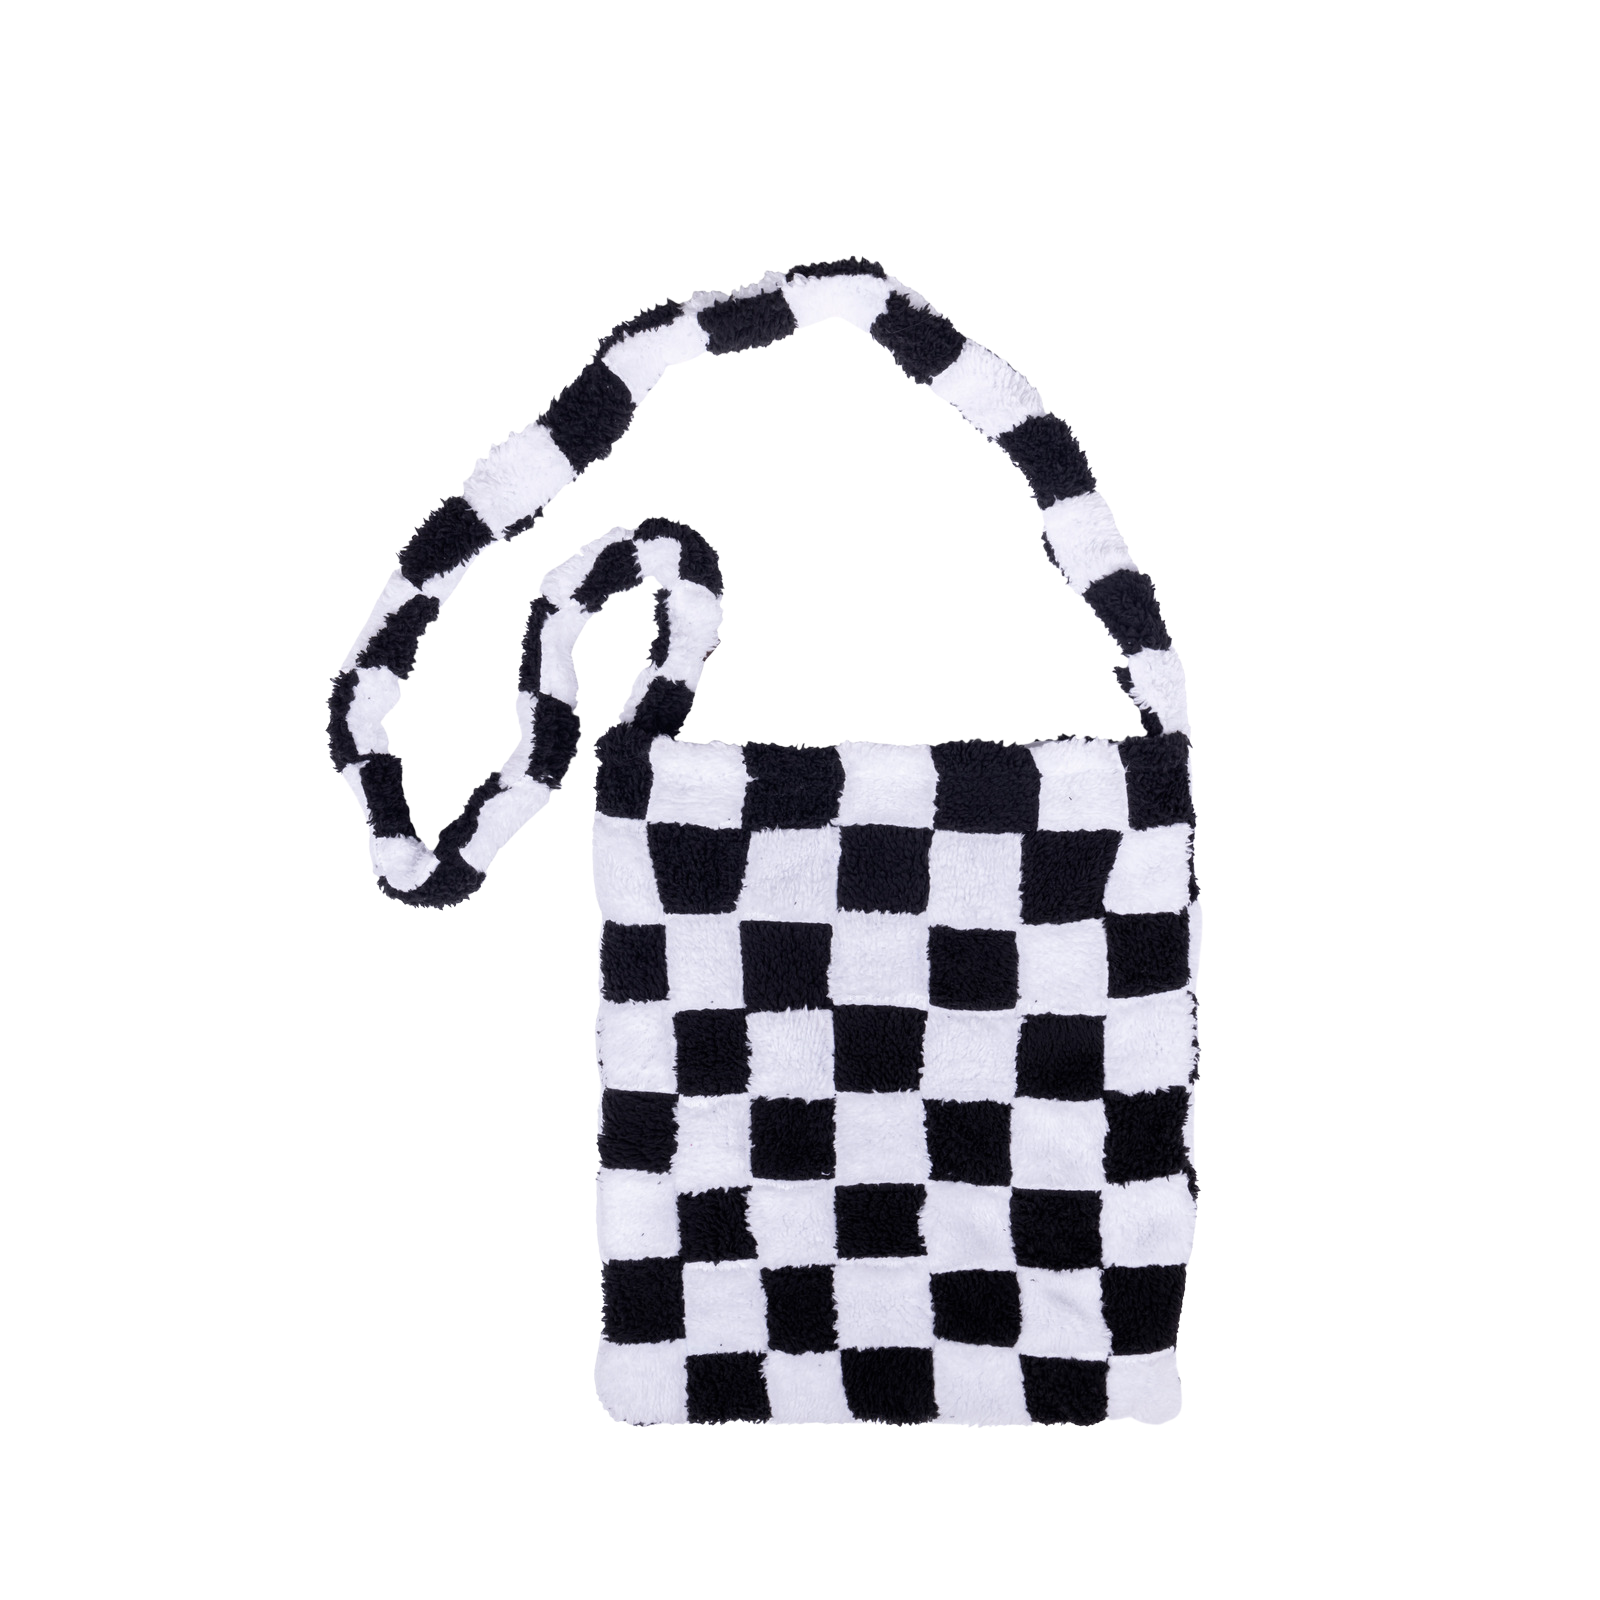 The Checkerboard™ tote bag